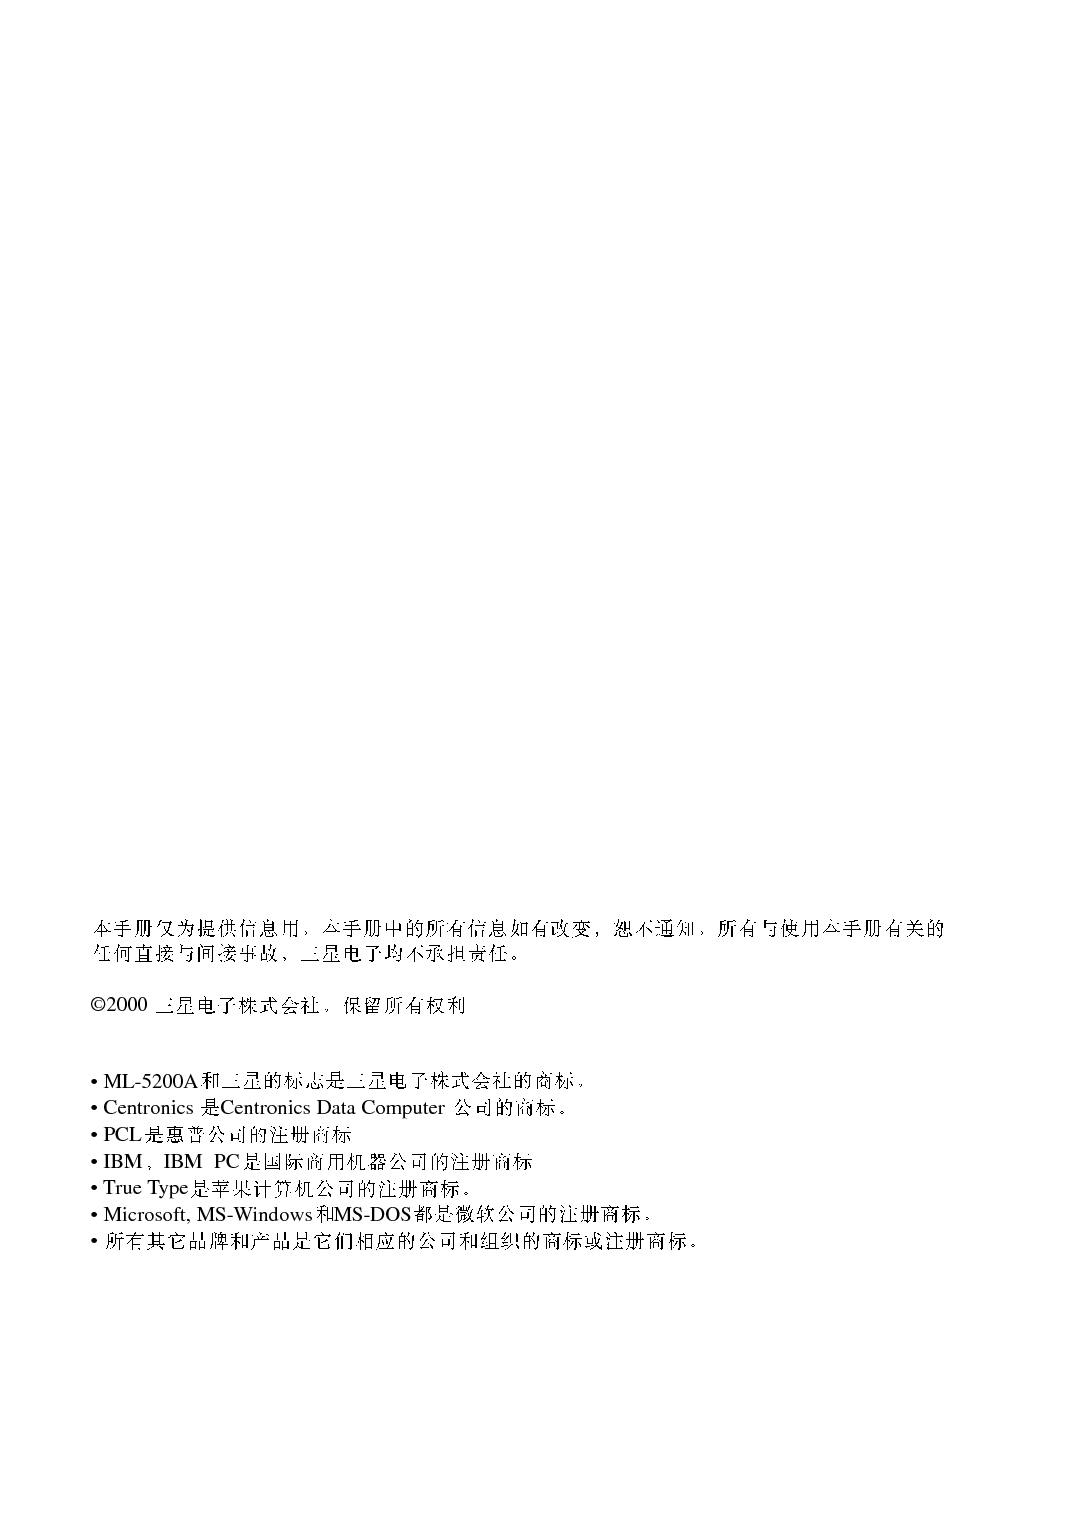 三星 Samsung ML-5200A 使用手册 第1页